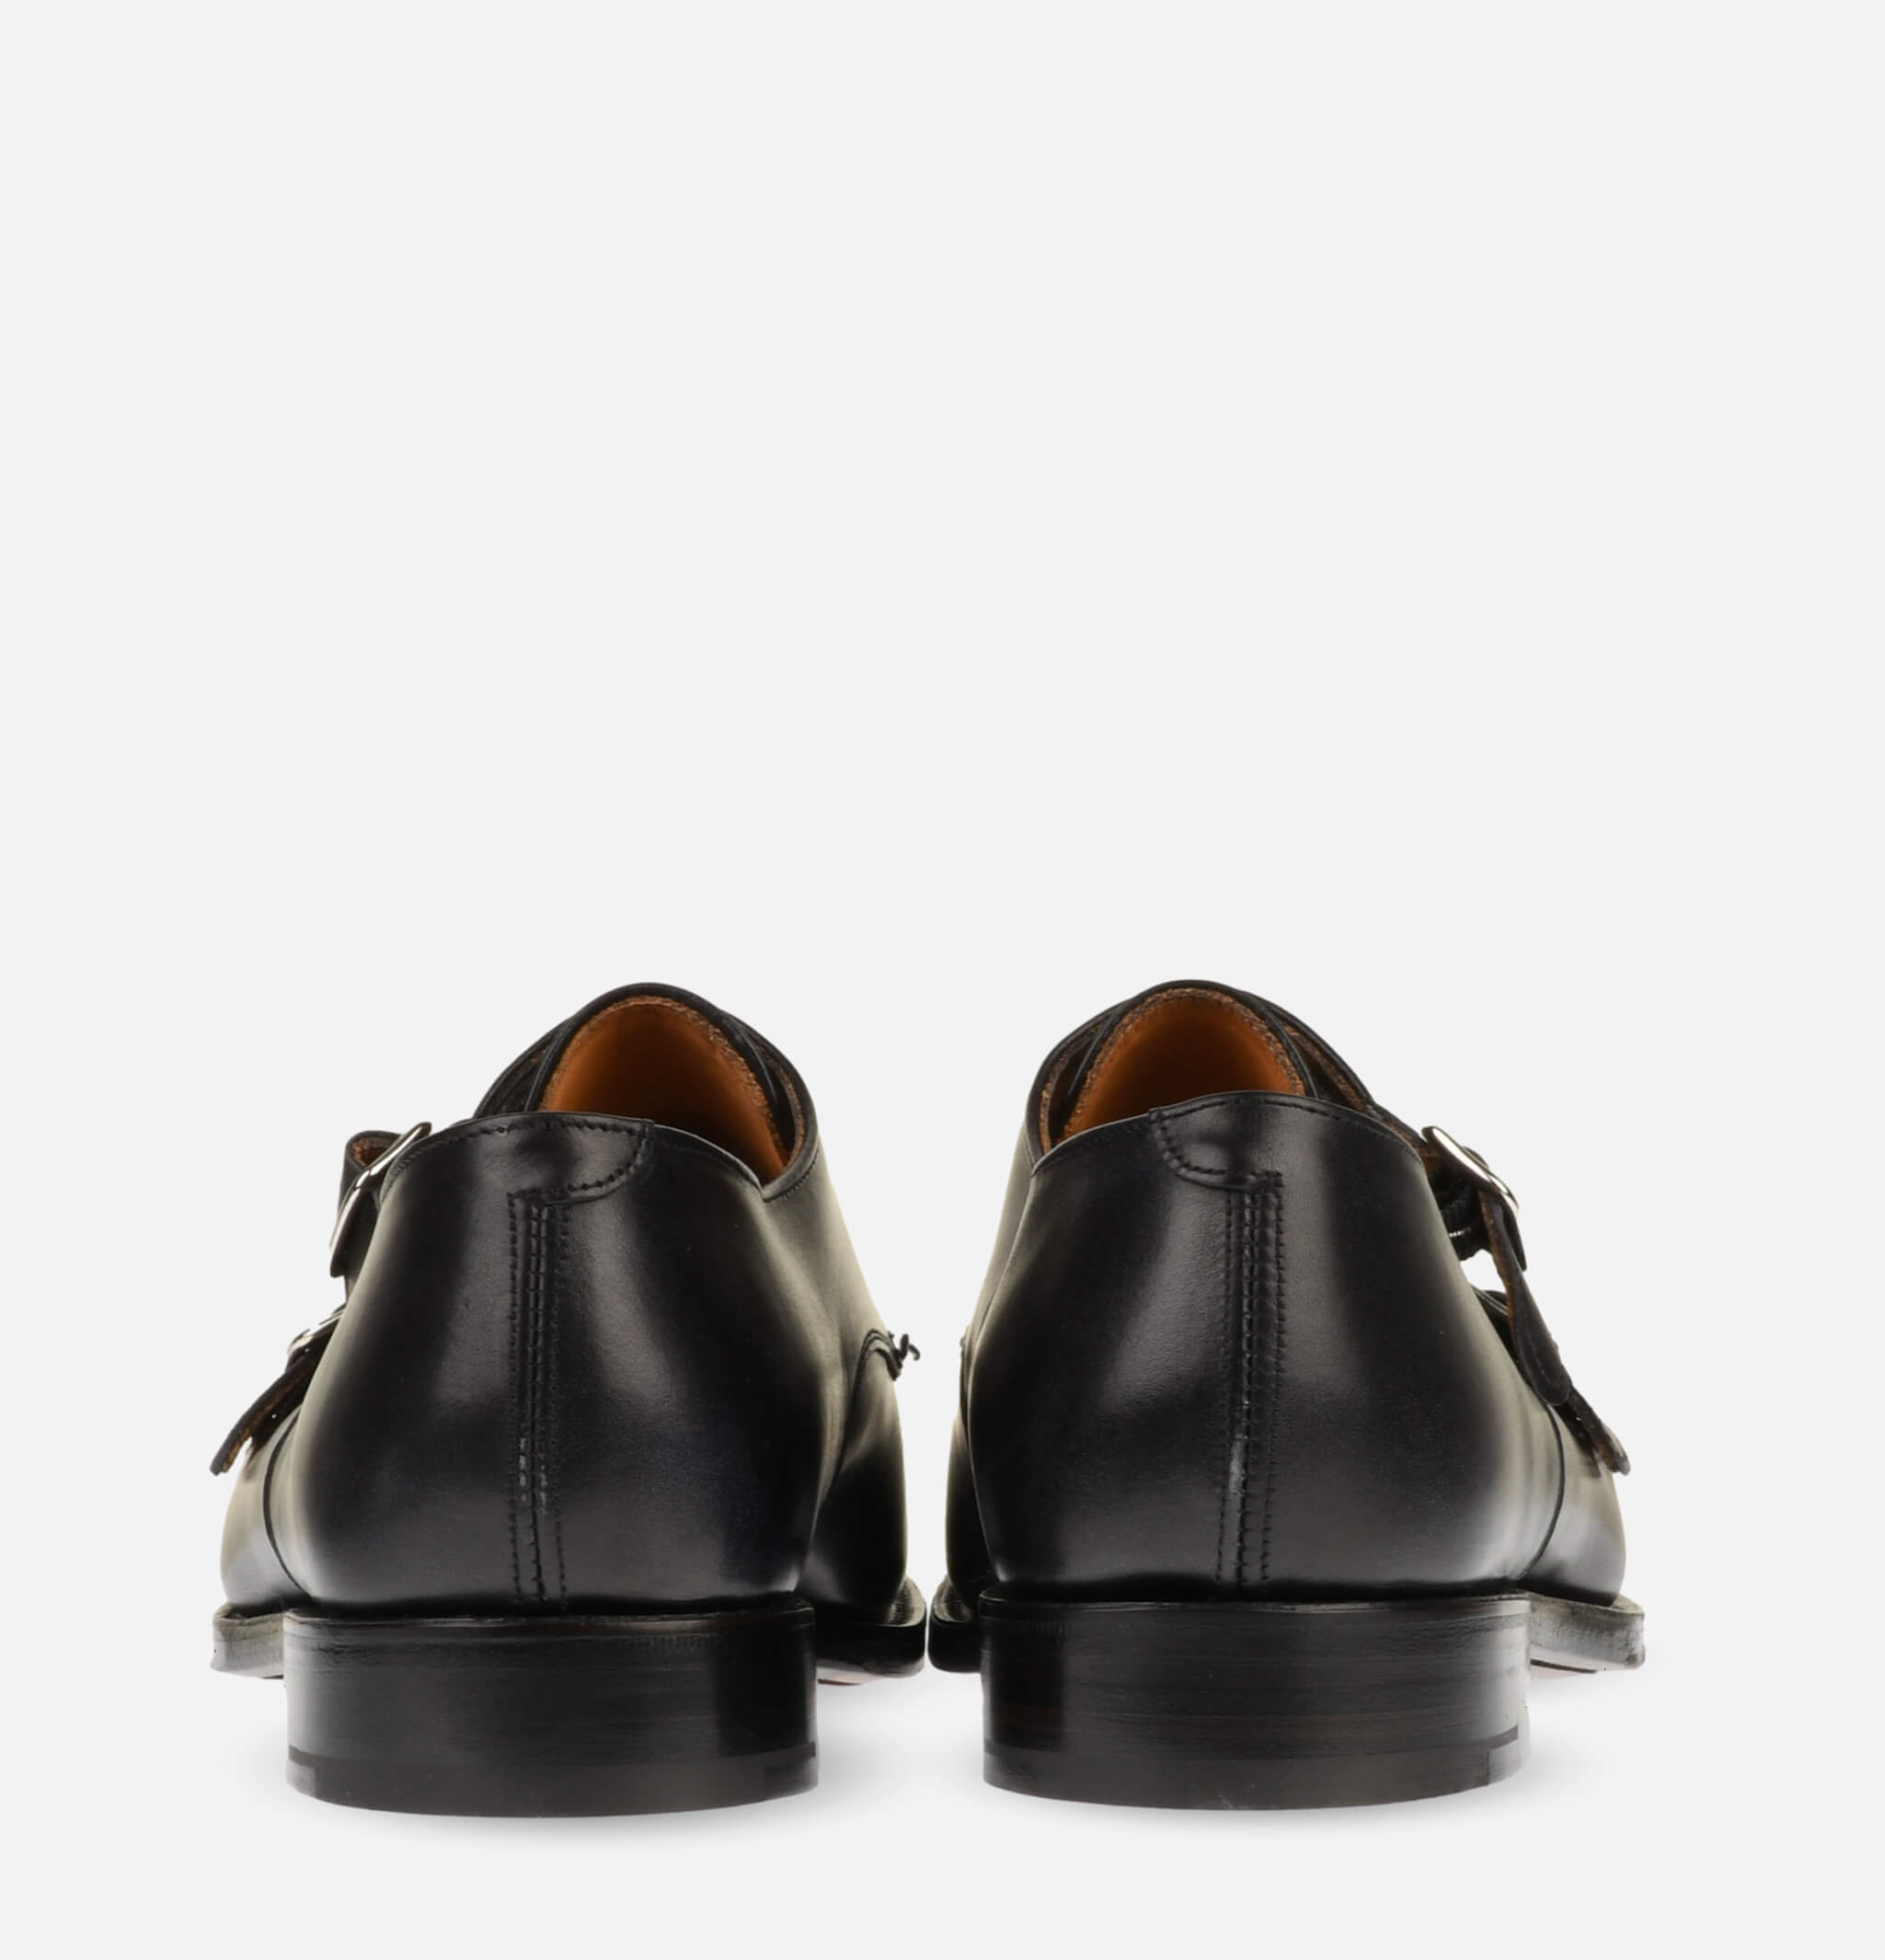 Chaussures Leavenworth Noir